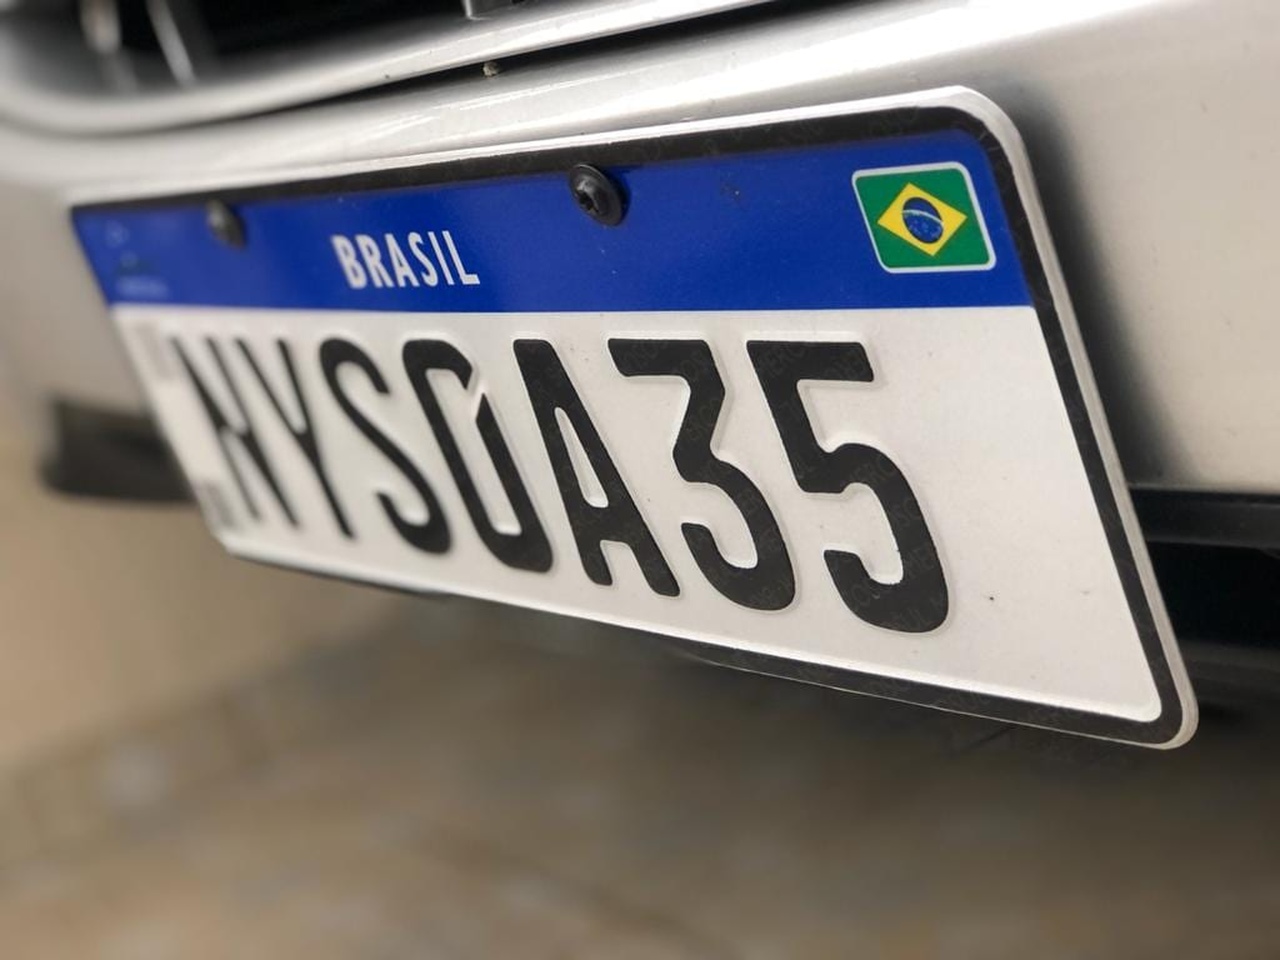 Próximo de completar 3 anos de implantação, placa Mercosul aumentou número de fraudes e preços abusivos no Brasil